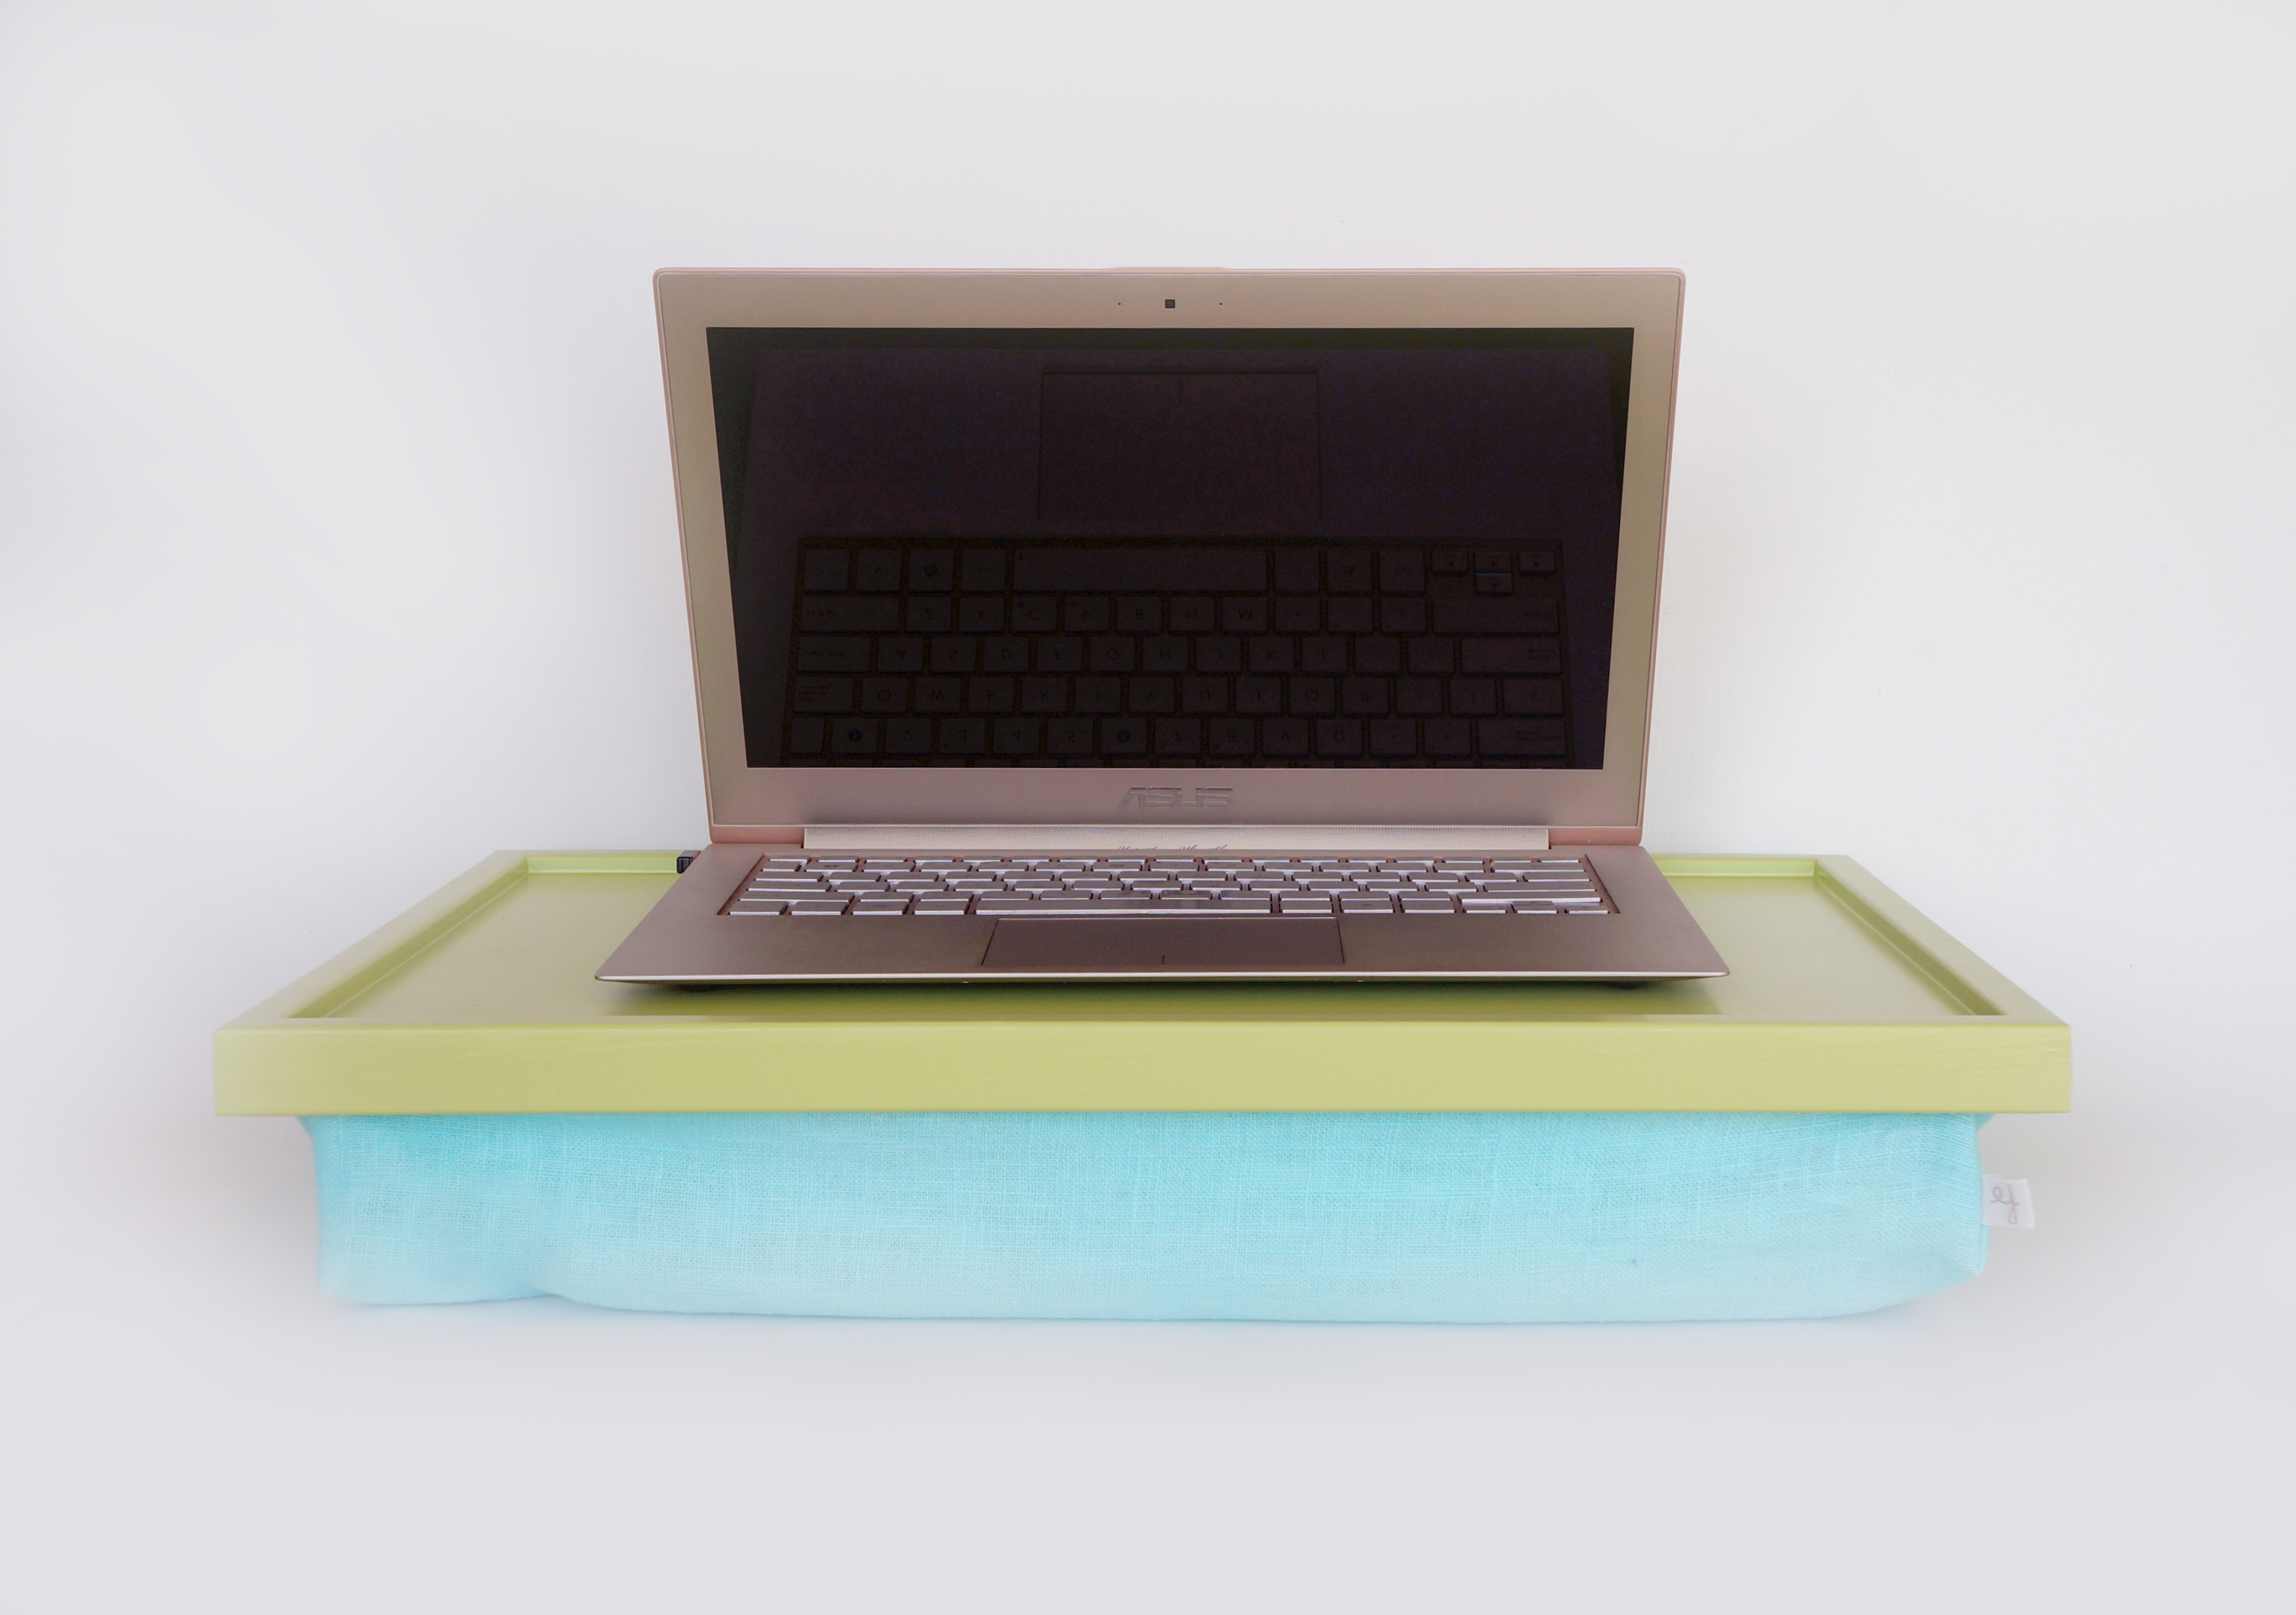 Aqua Pillow Ipad Desk Or Laptop Lap Desk Light Green With Aque